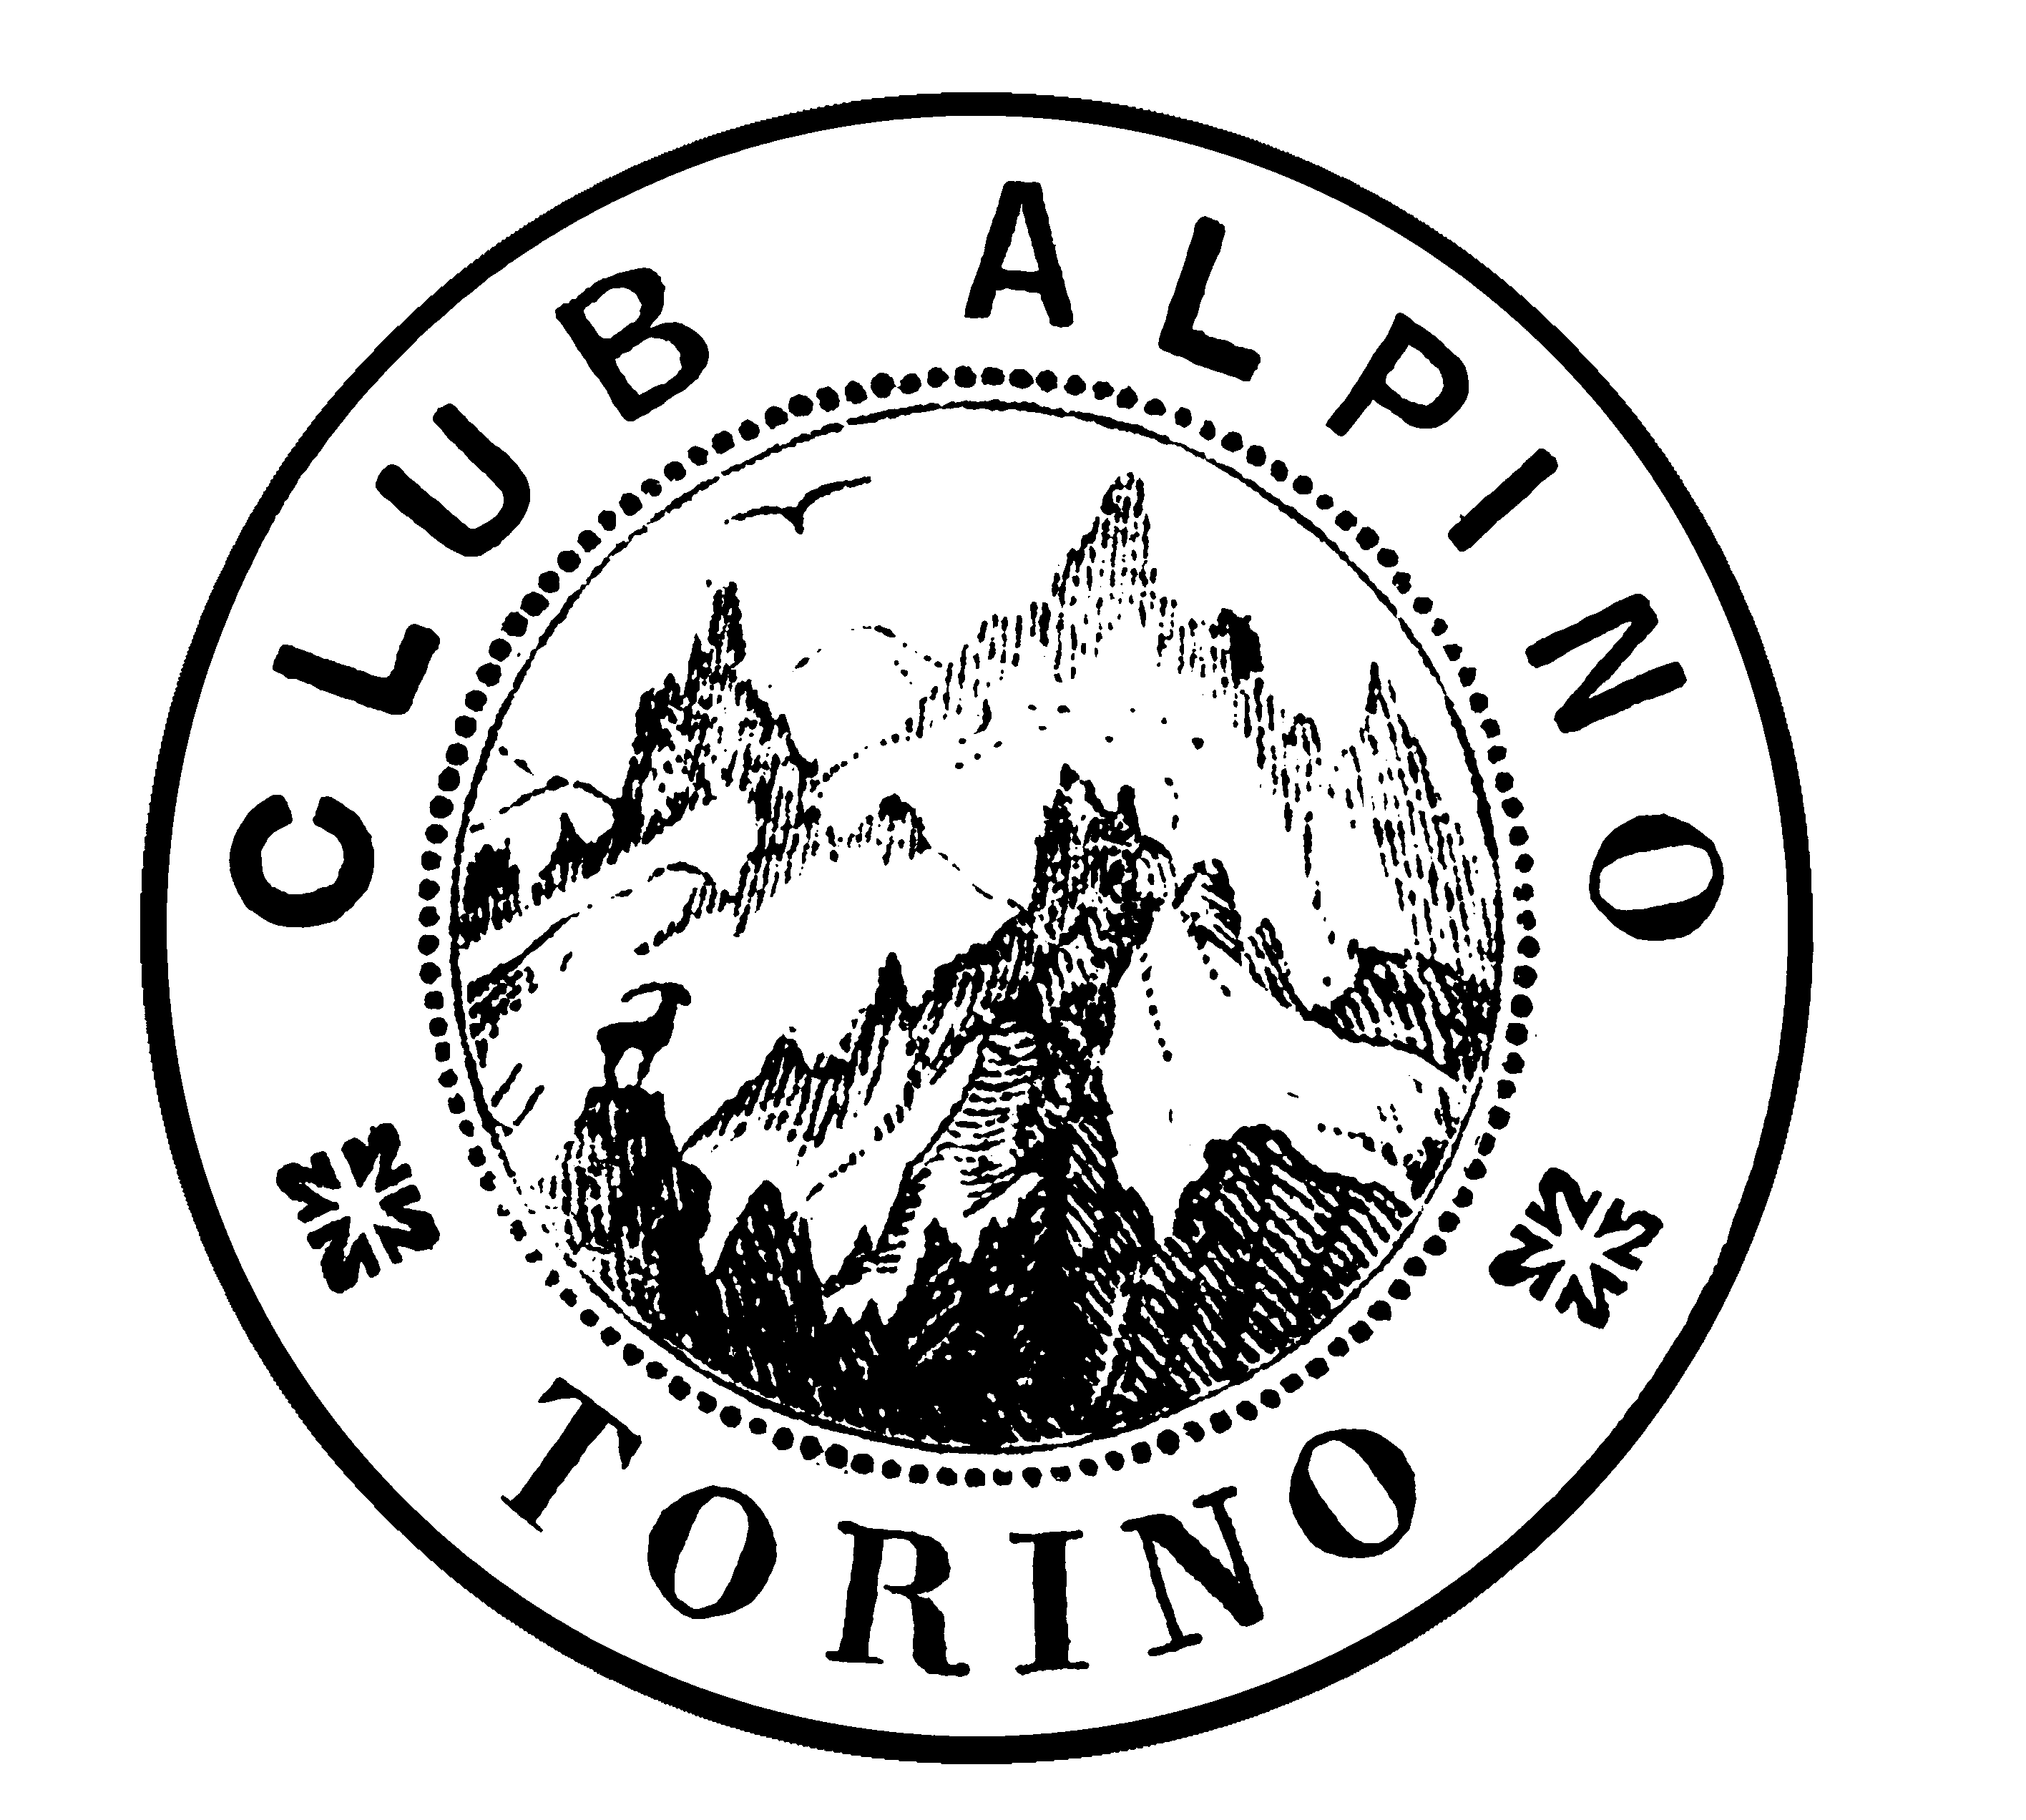 CAI Torino: 25 e 26 maggio festeggiamenti per i 150 anni di fondazione del Club Alpino Italiano